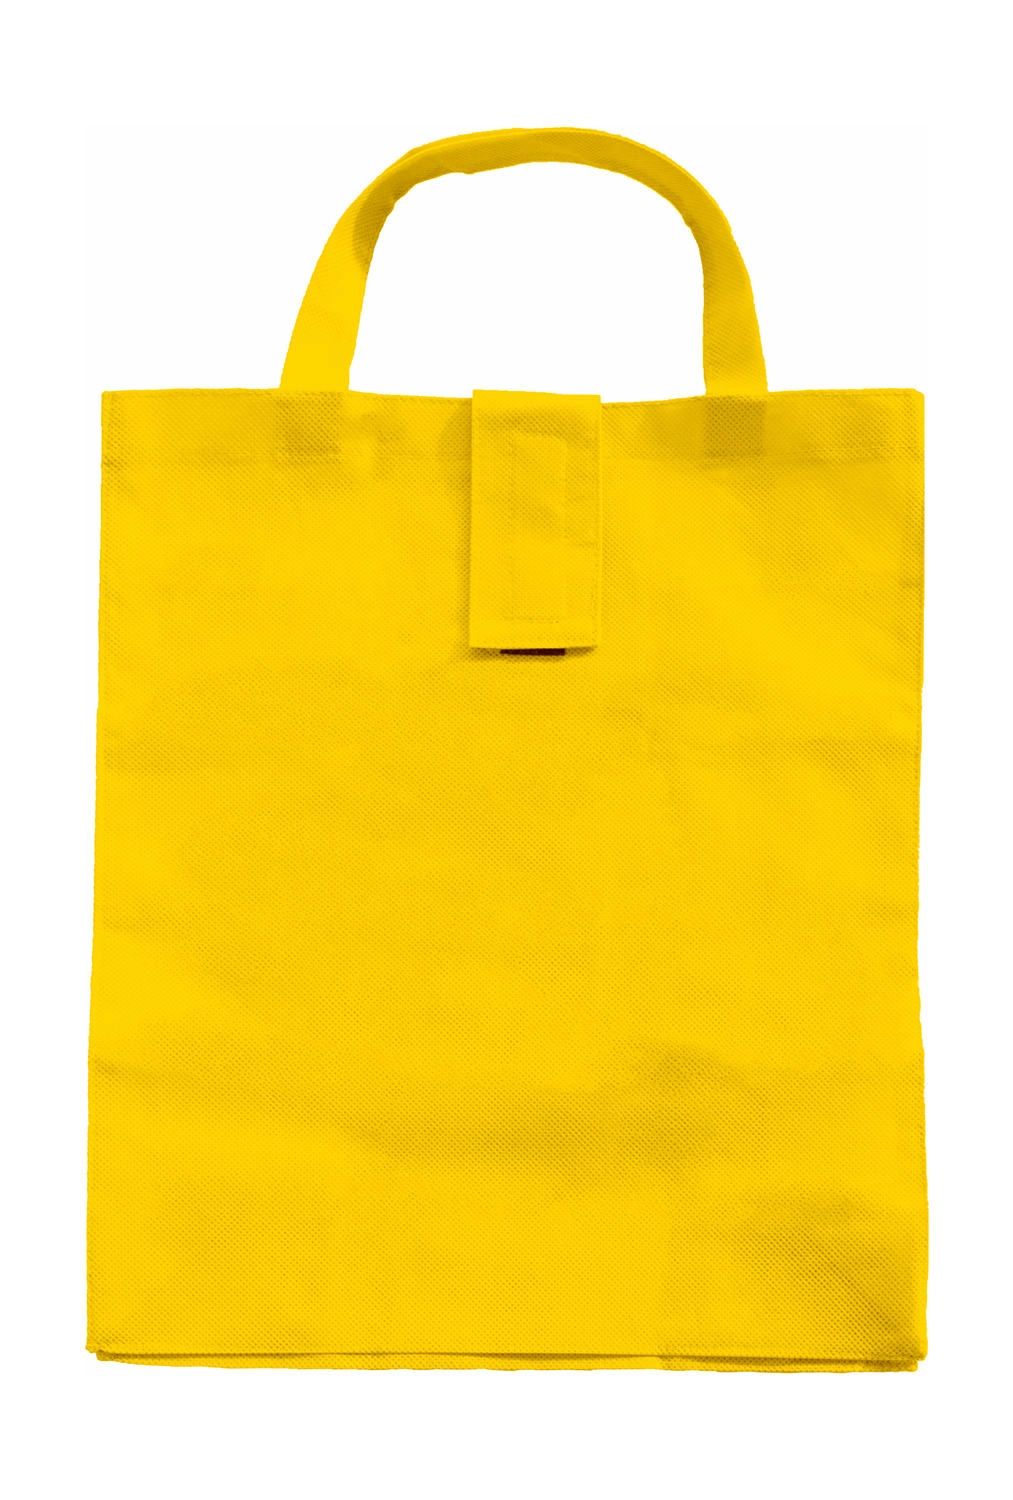 Folding Shopper SH zum Besticken und Bedrucken in der Farbe Yellow mit Ihren Logo, Schriftzug oder Motiv.